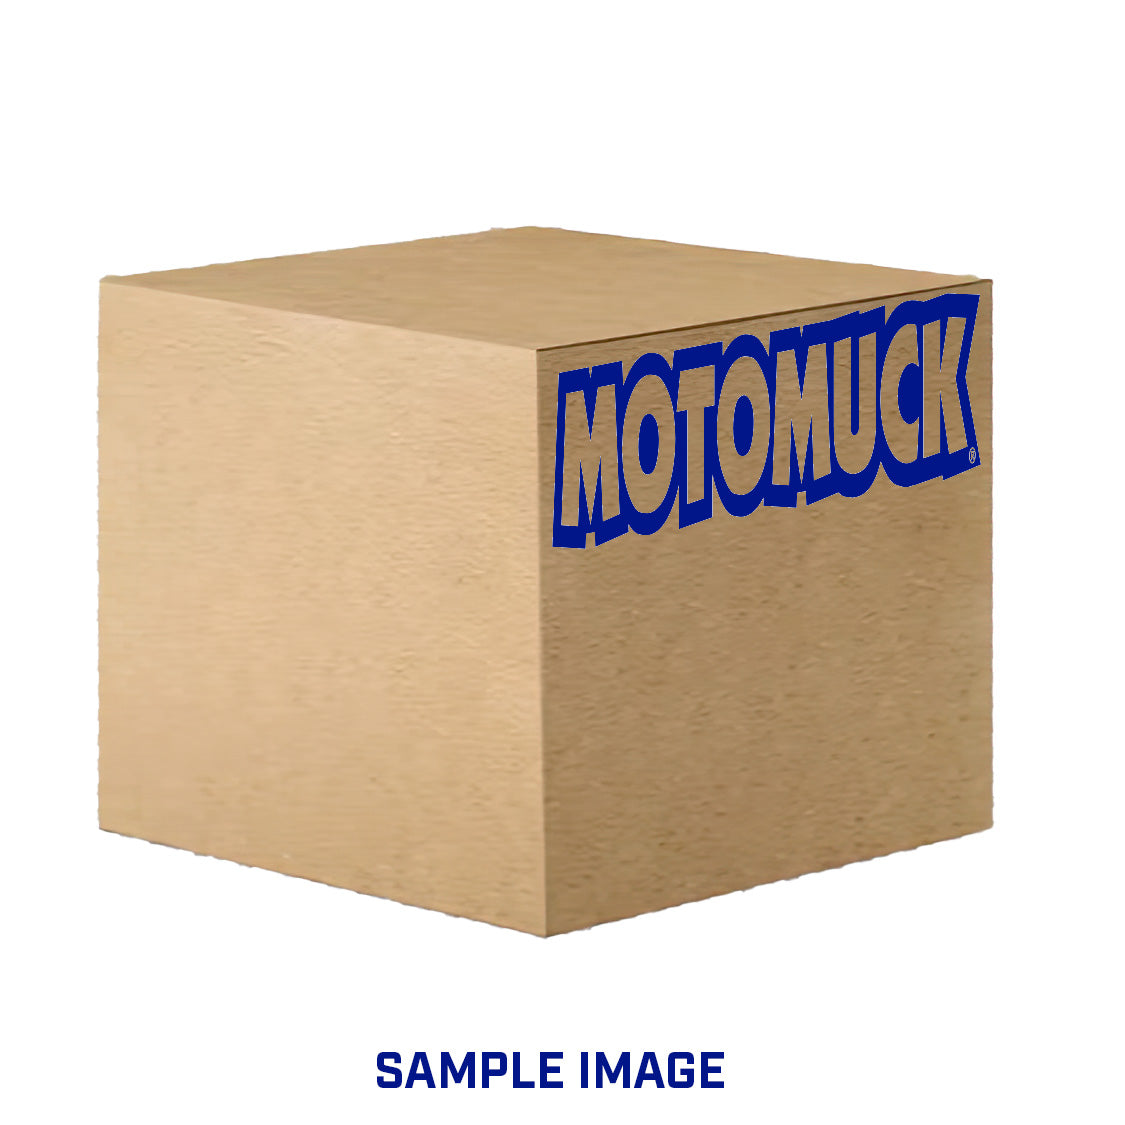 MOTOMUCK BOX OF 12